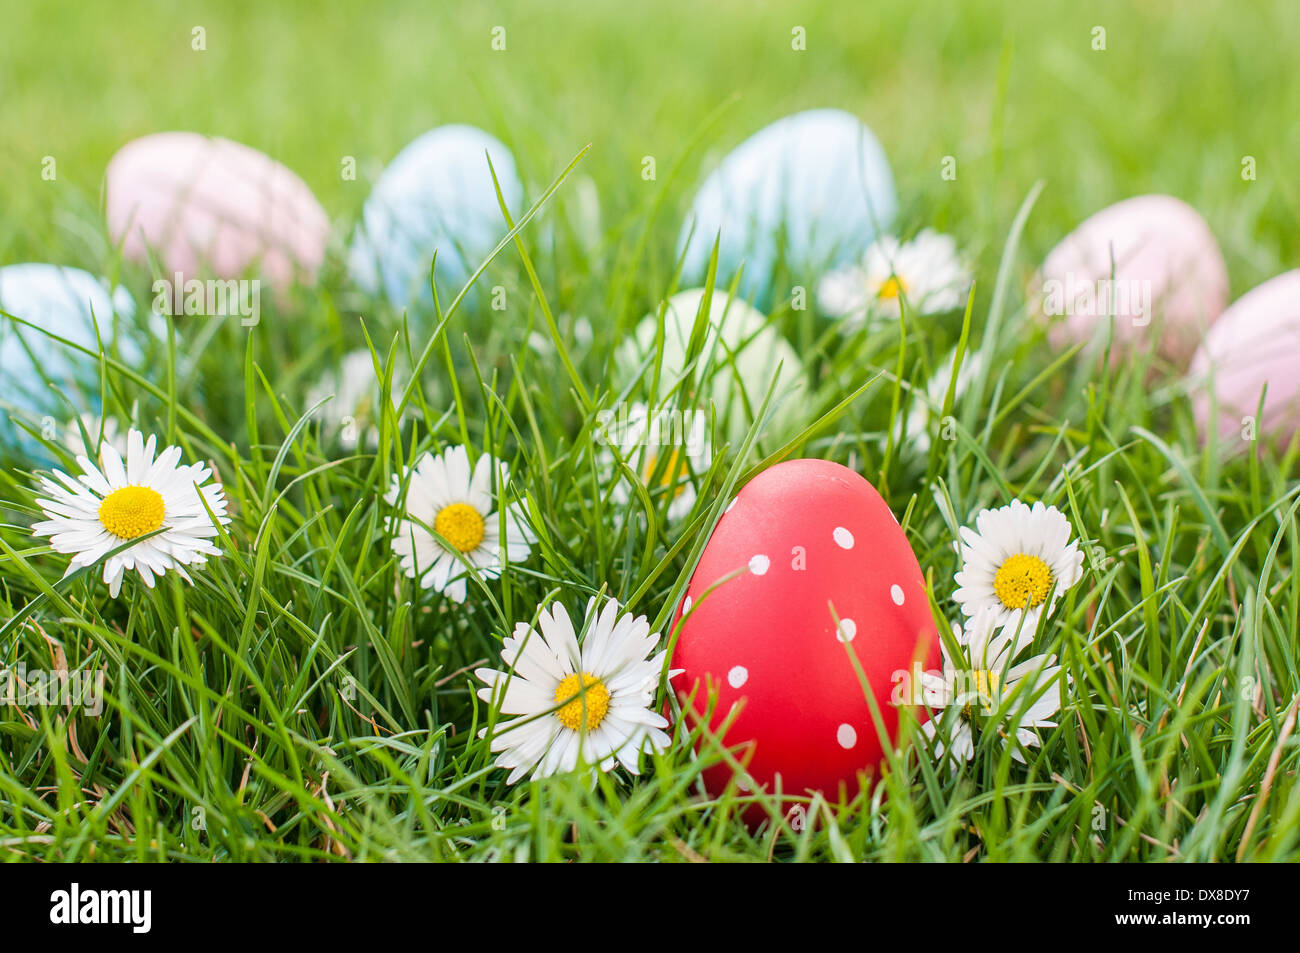 Easter Egg rouge dans un nid d'herbe et de fleurs de printemps Banque D'Images